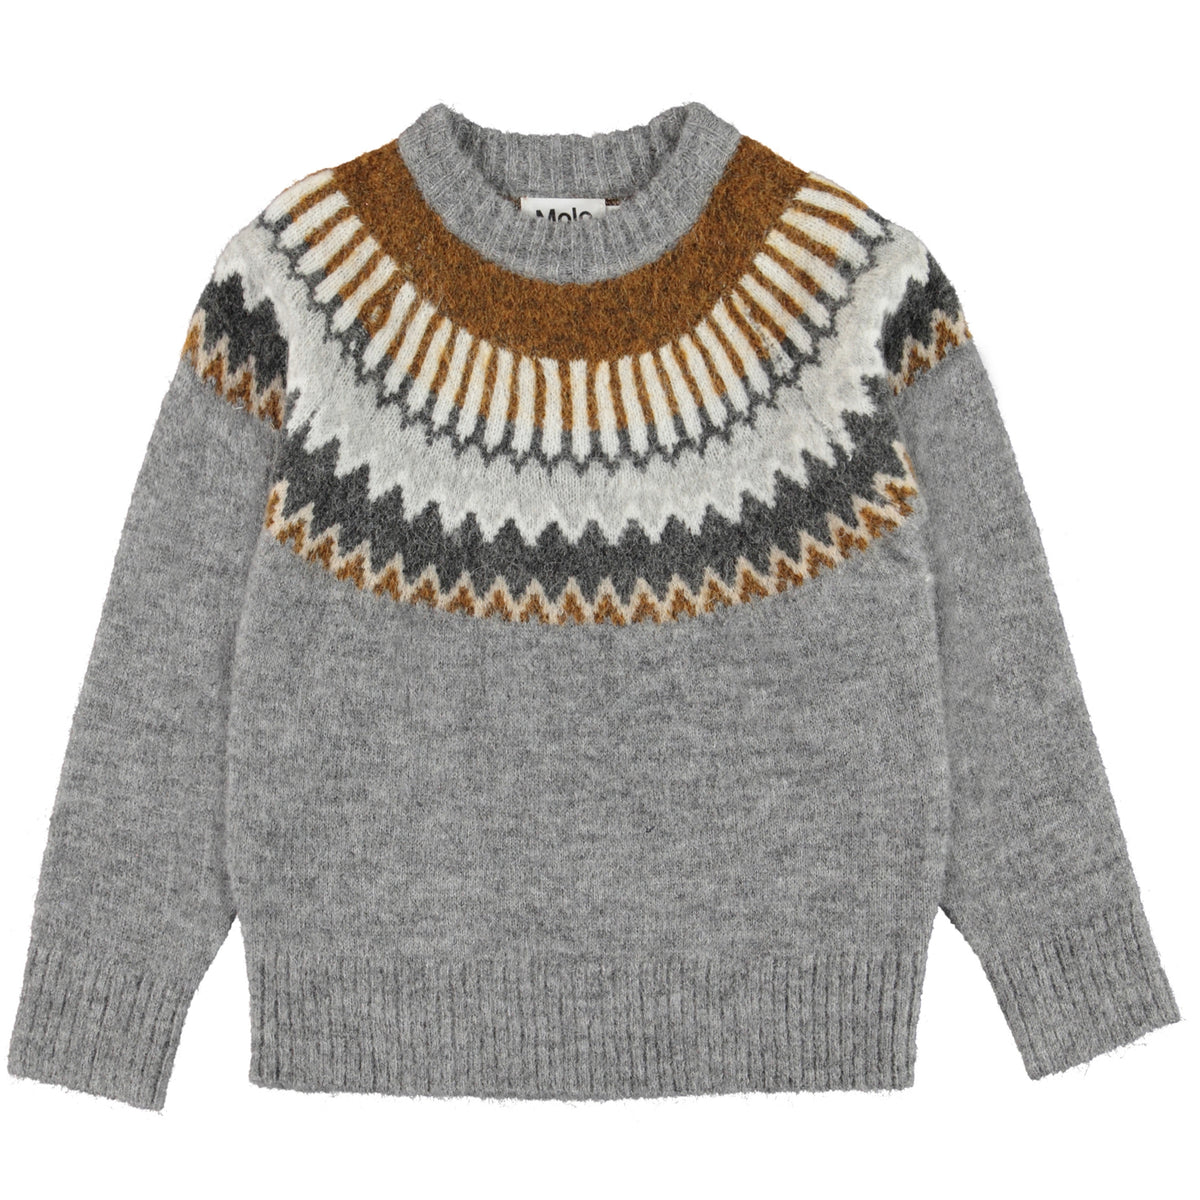 7 kits tricot en laine méga géante - Peace and Wool